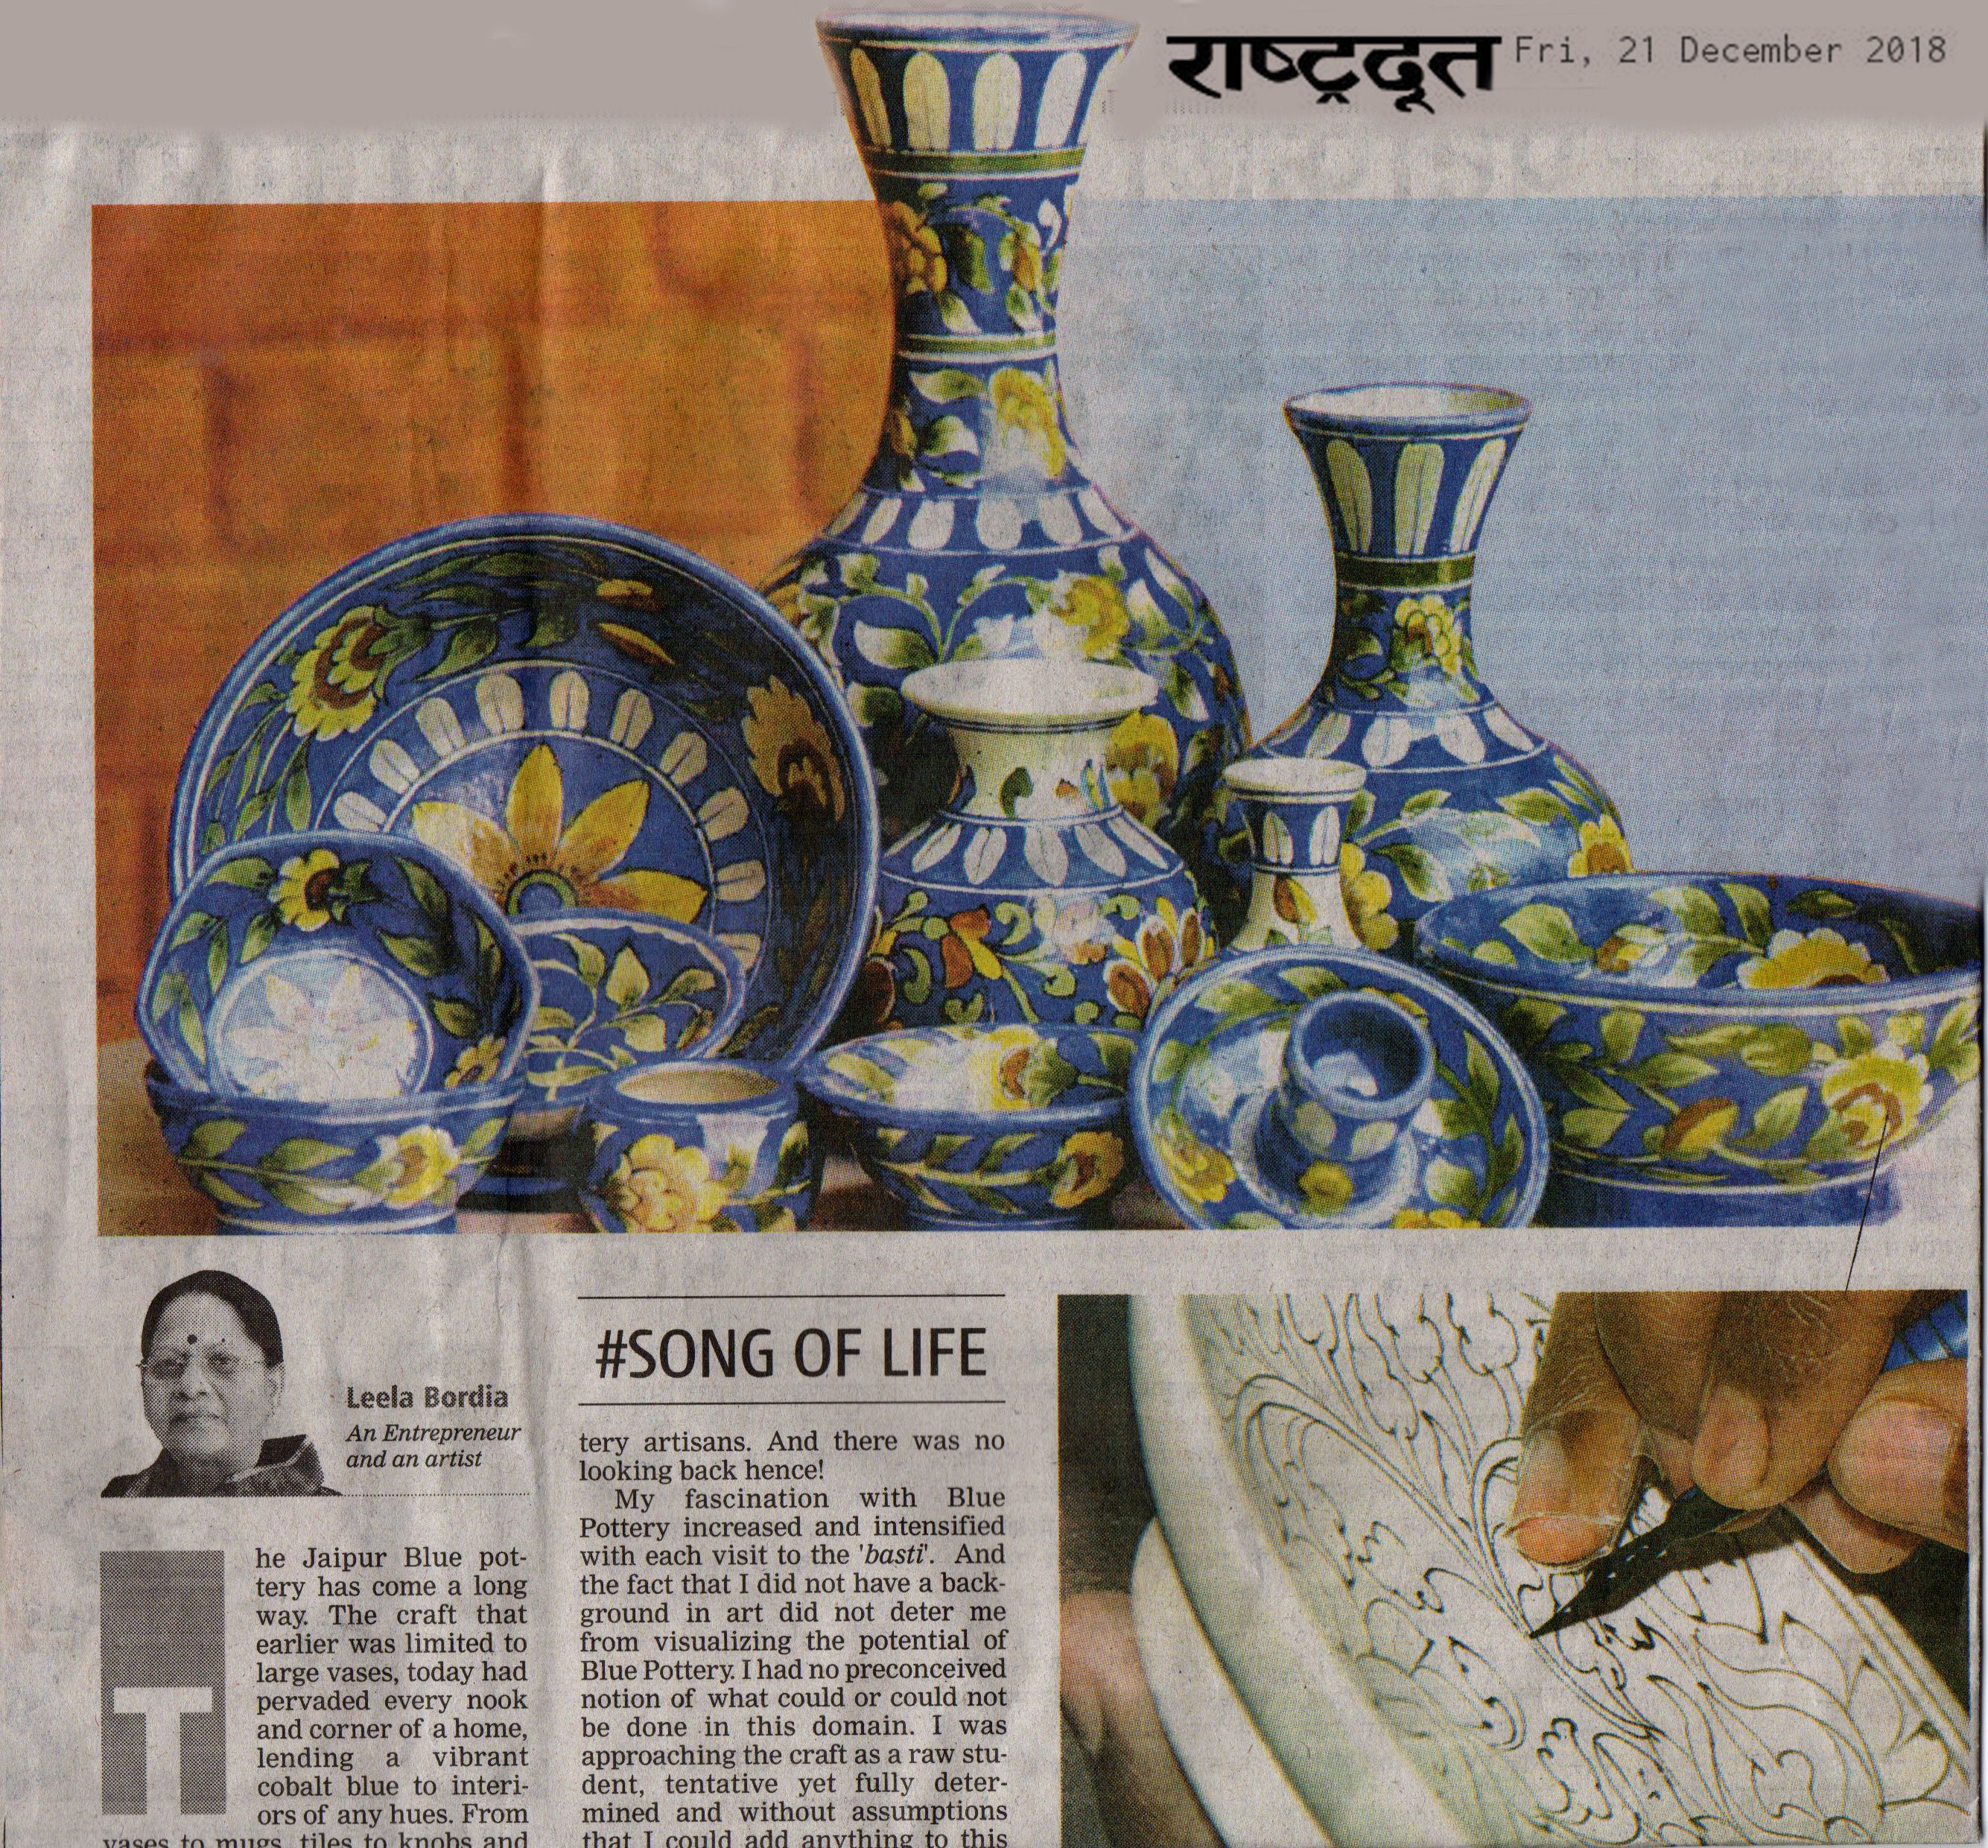 Leela Bordia - Neerja Jaipur Blue Pottery